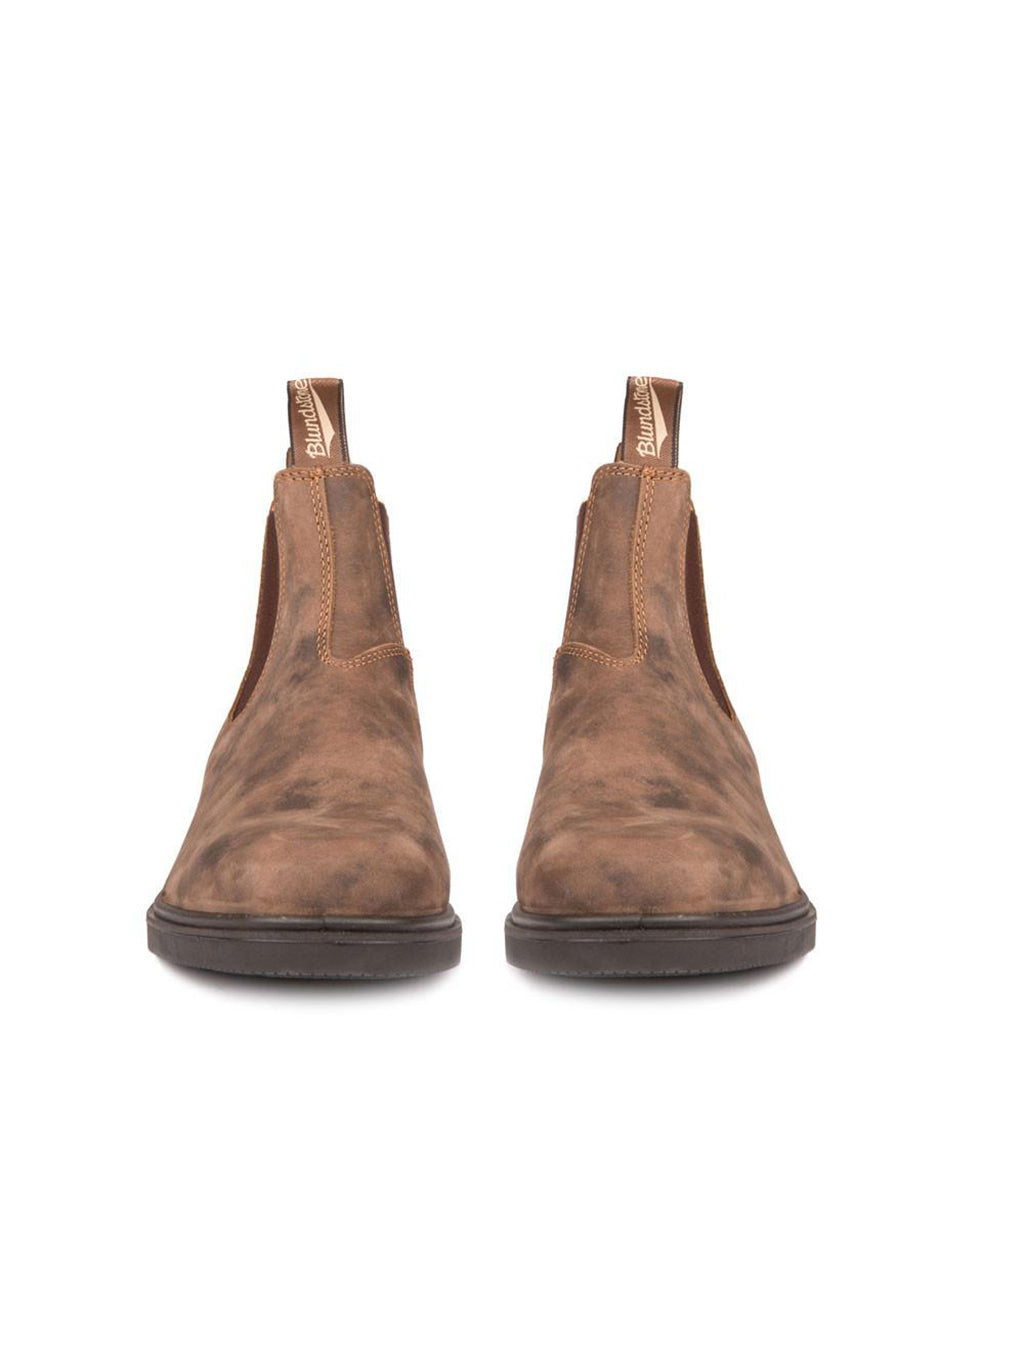 Dress boot 1306 rustic brown